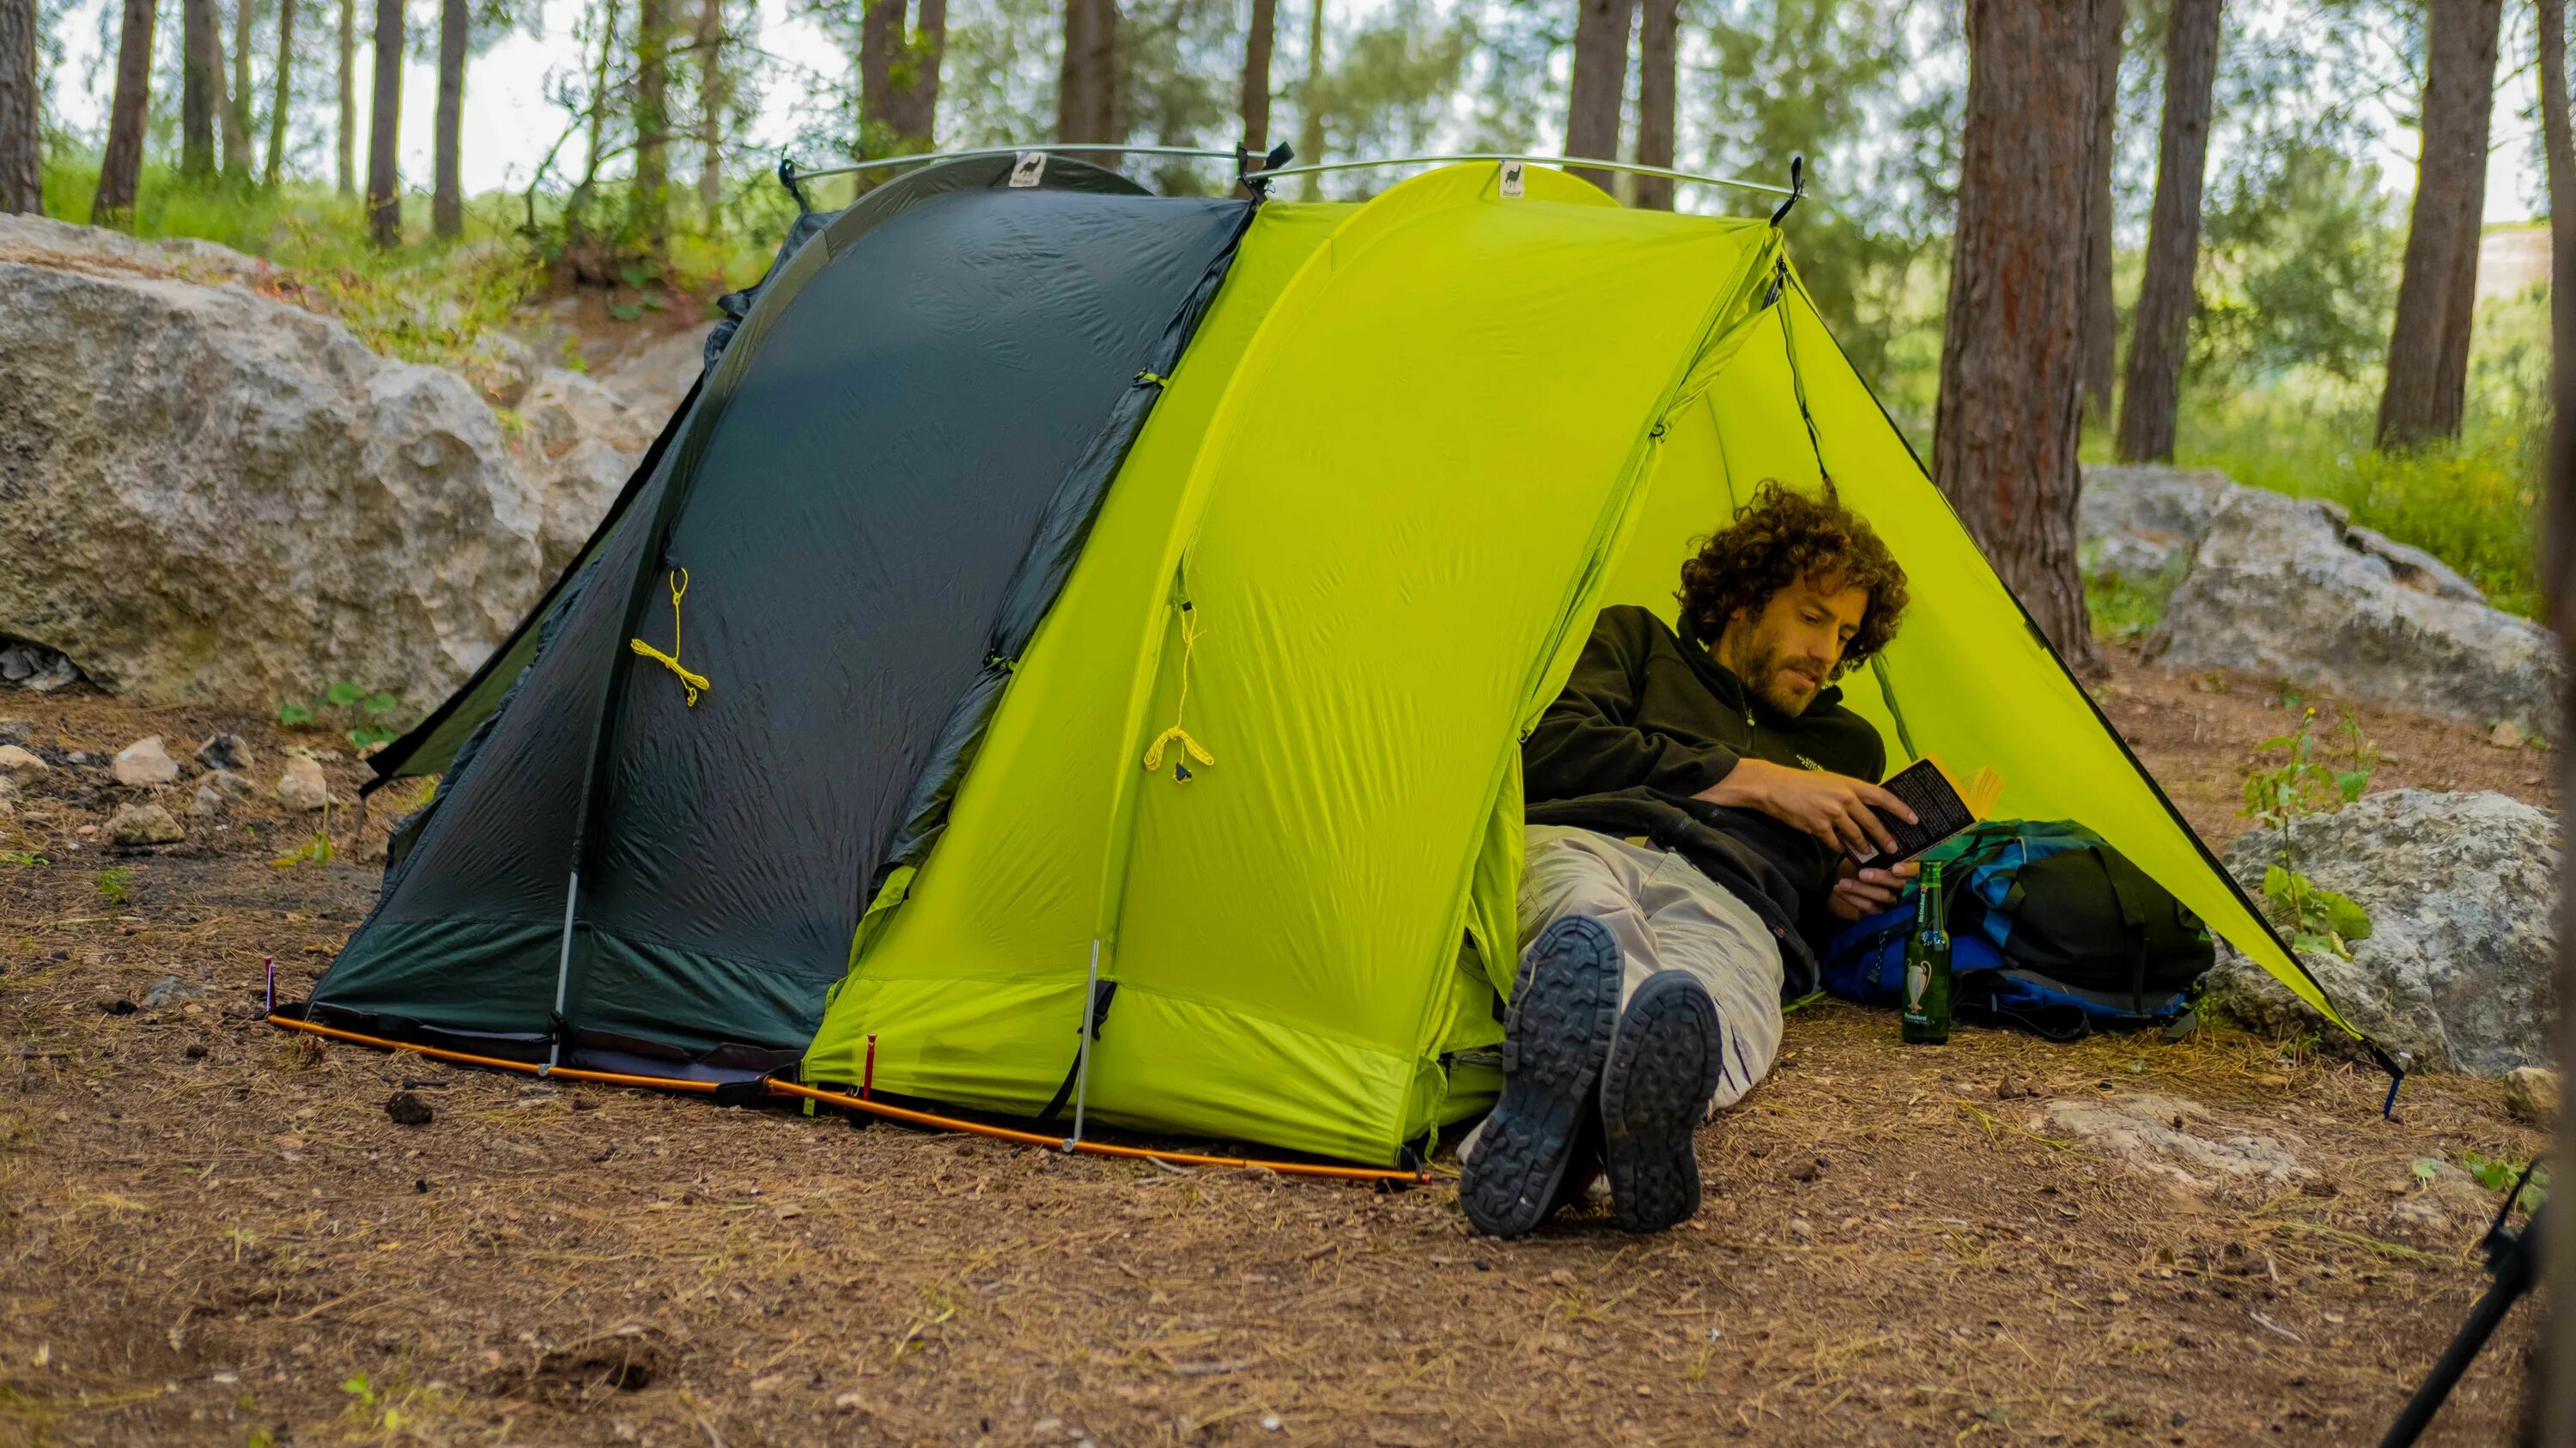 “Modular Tent System” палатки. Спать в палатке. Палатки для кемпинга. Ночевка в палатке. Camping with extend